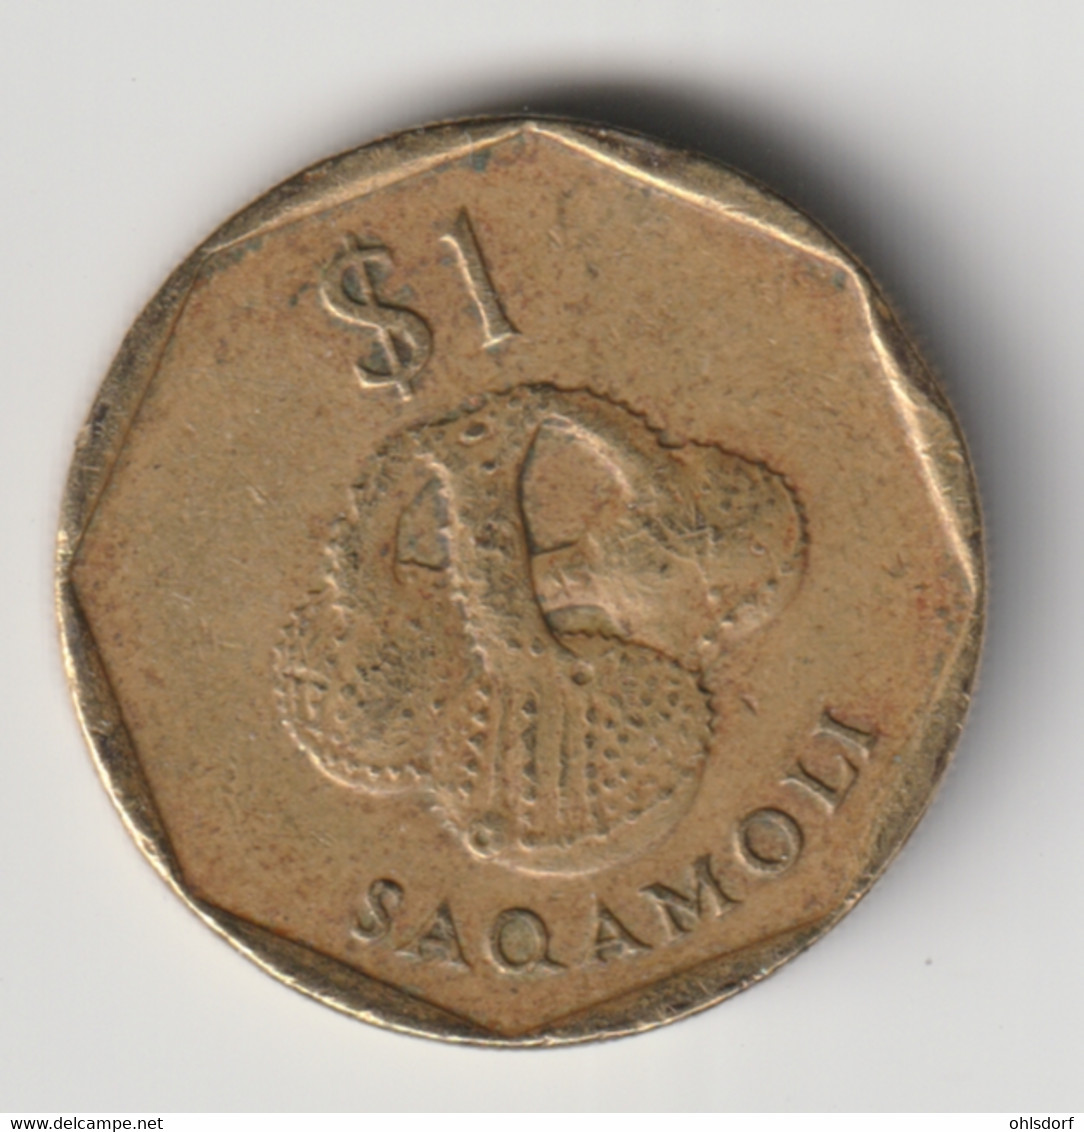 FIJI 1995: 1 Dollar, KM 73 - Fiji